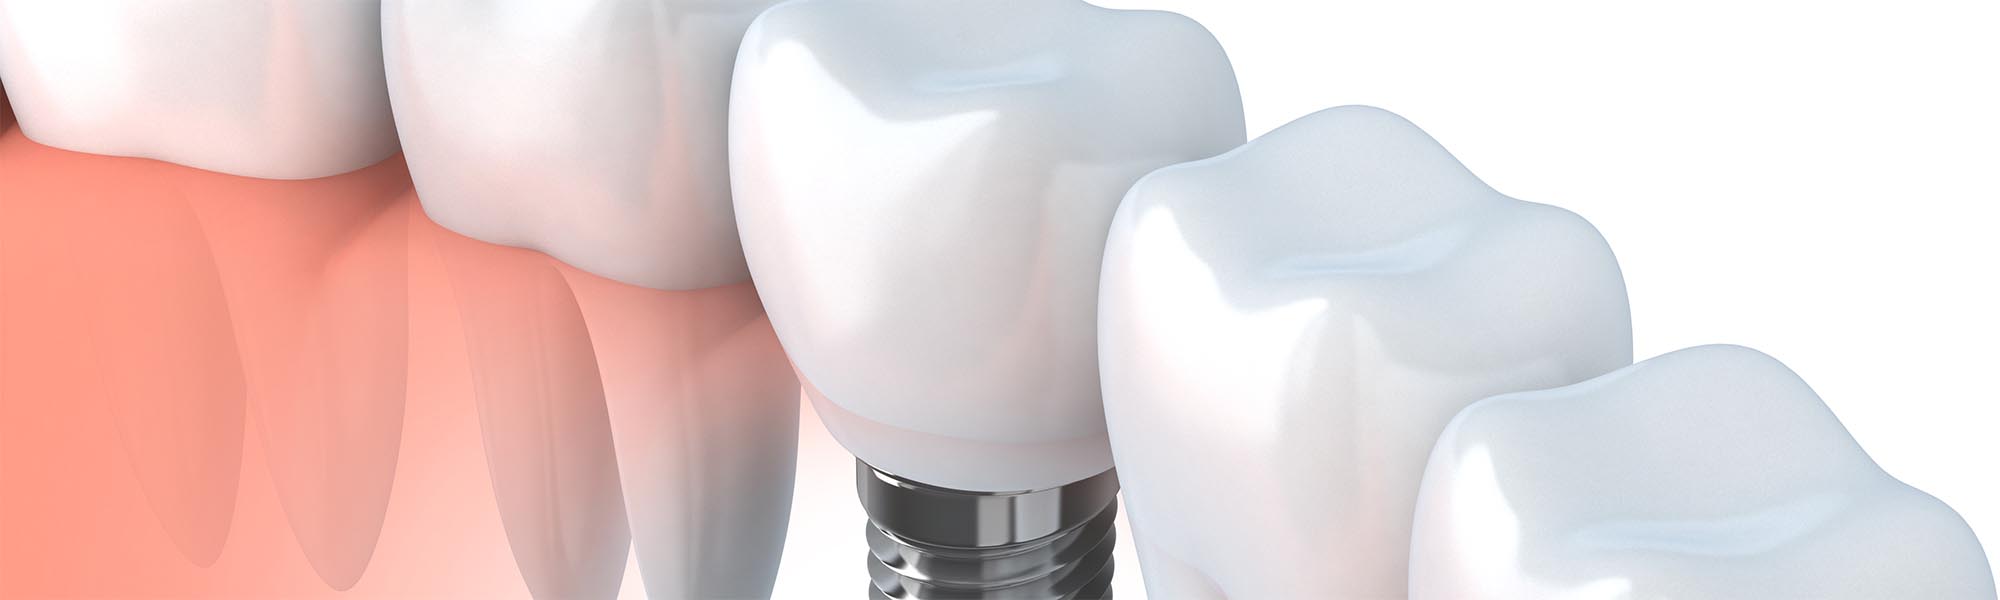 Single Tooth Implants El Segundo CA